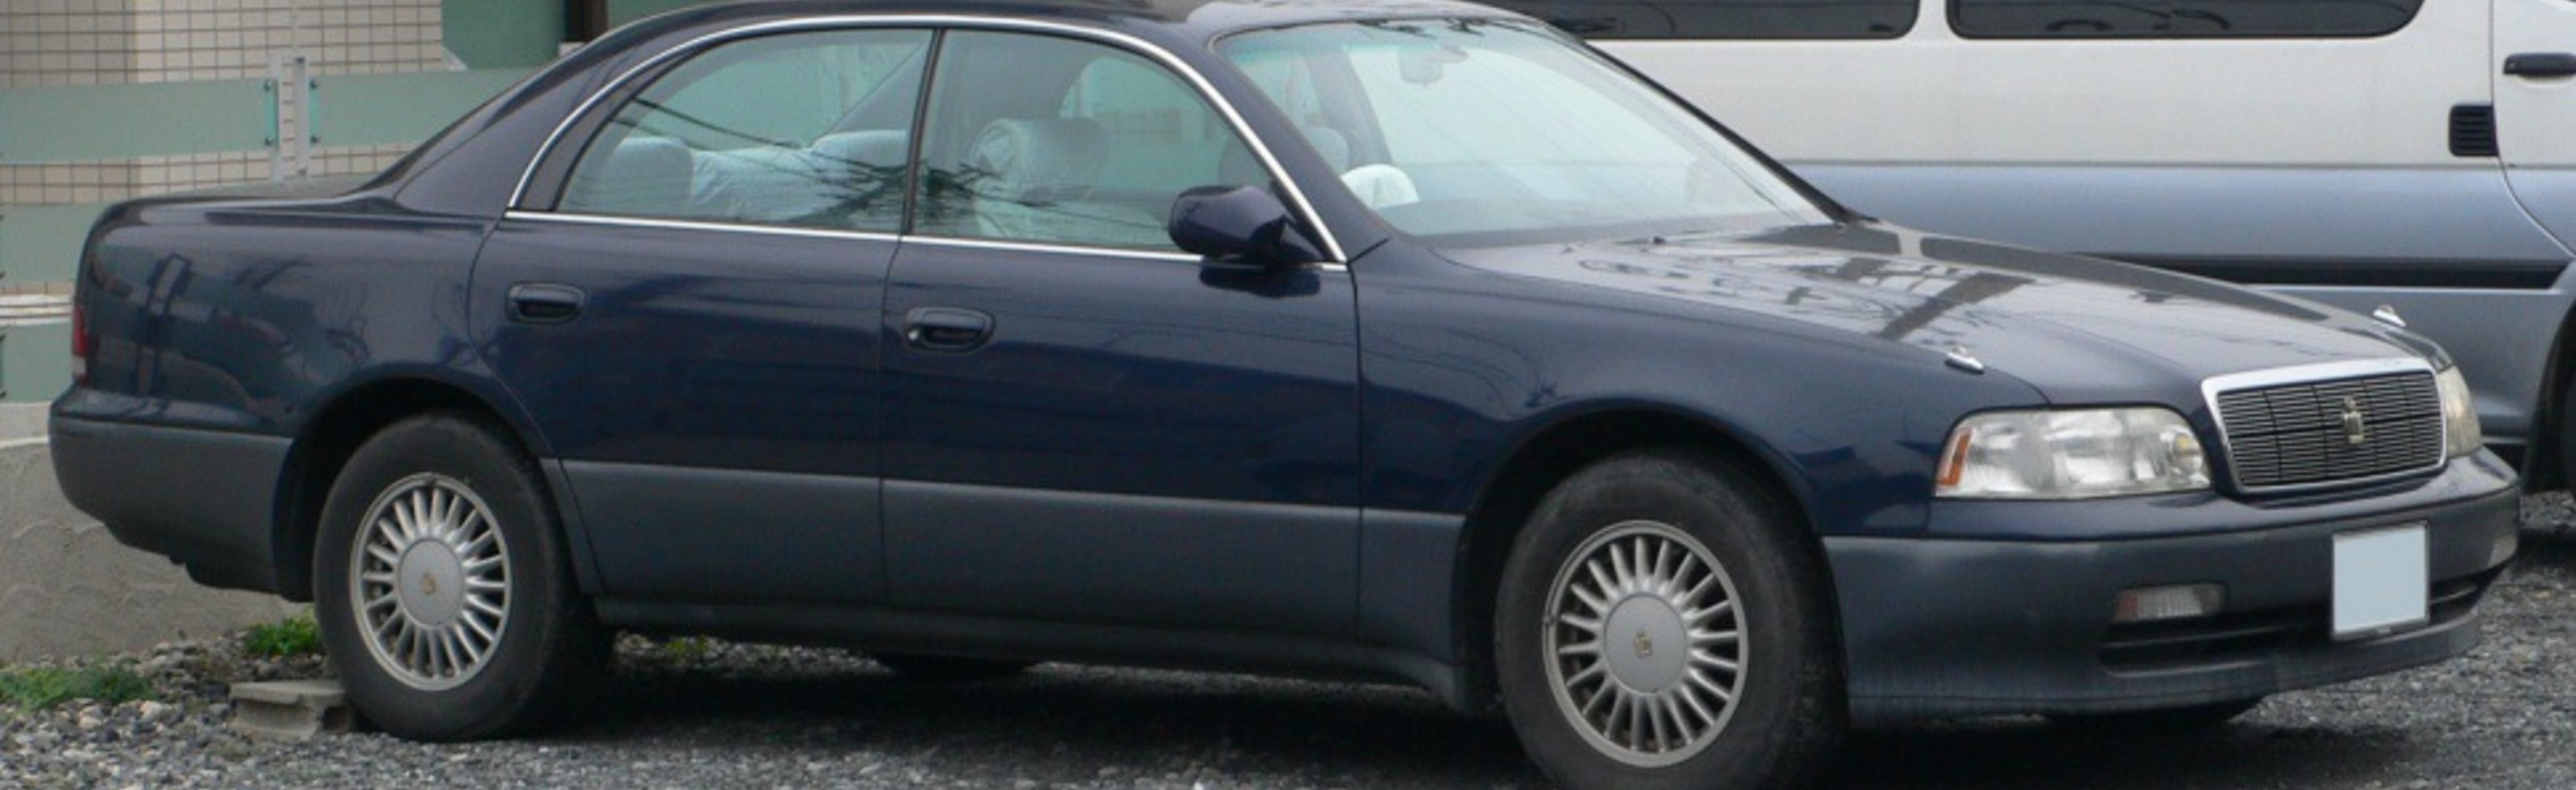 Toyota Crown Majesta I (S140) 4.0i V8 32V (260 Hp) Automatic 1991, 1992, 1993 